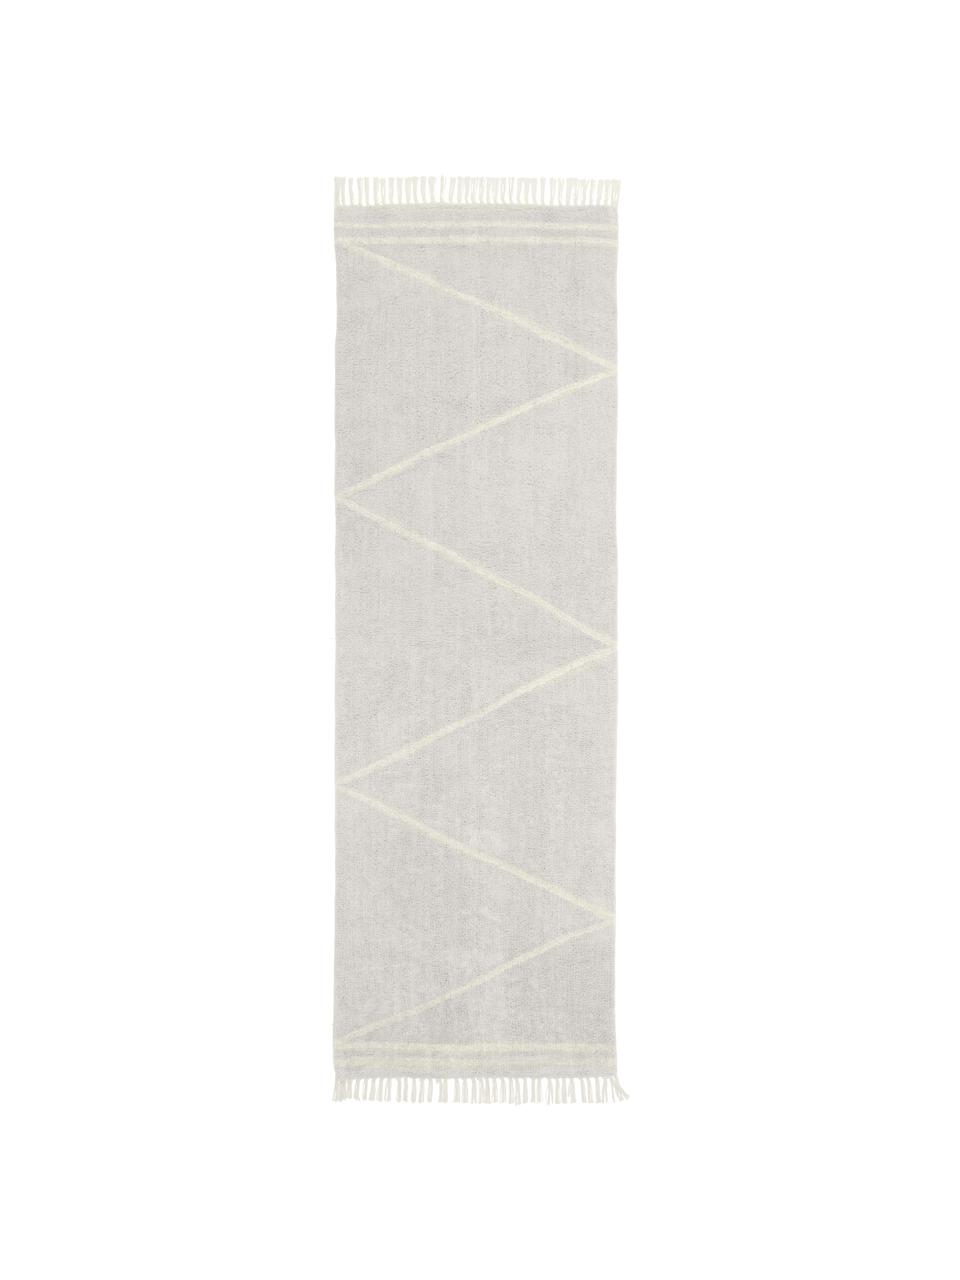 Handgetufte katoenen loper Asisa met zigzag patroon en franjes, Lichtgrijs, B 80 x L 250 cm